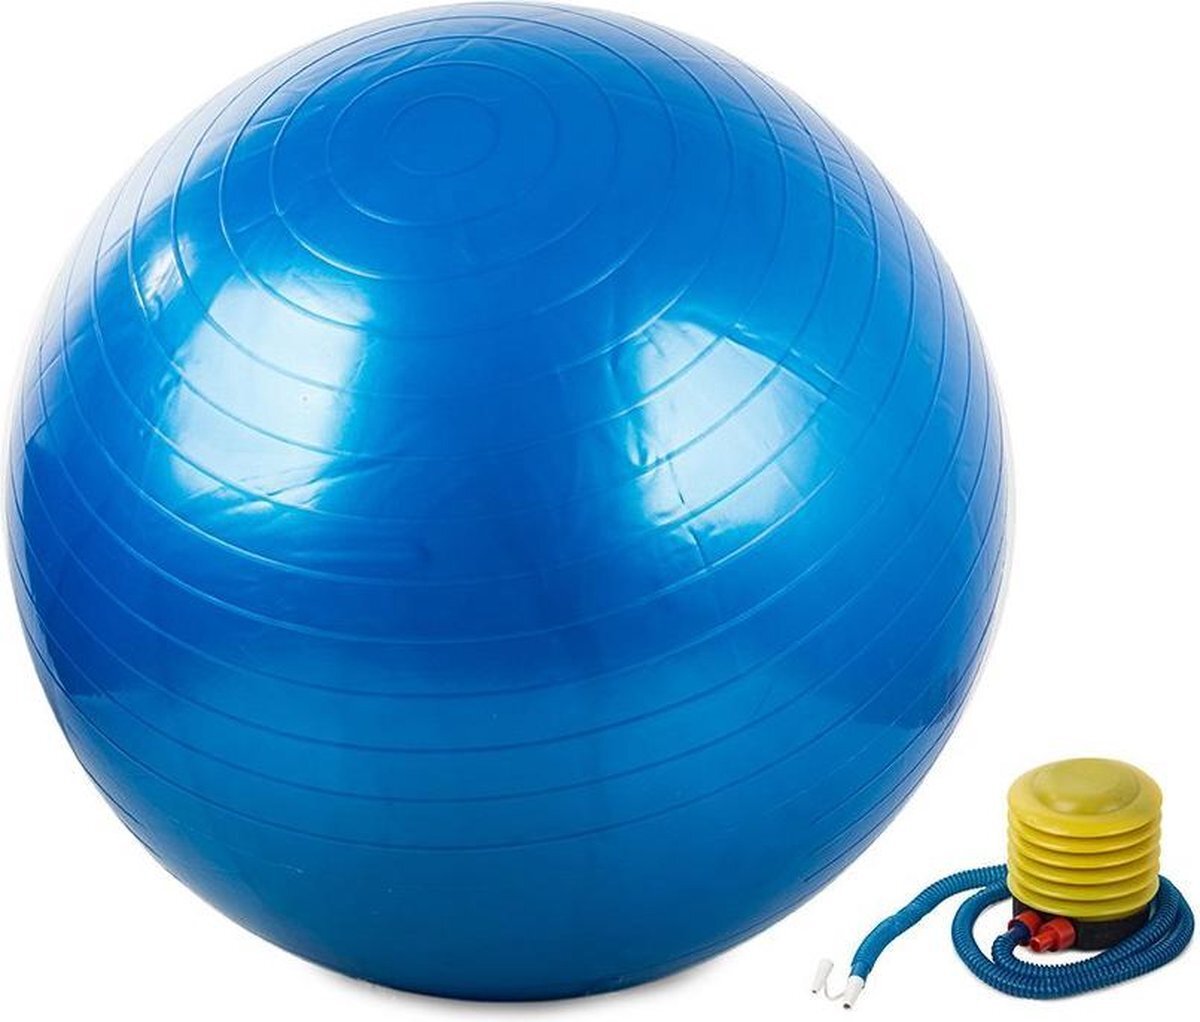 VERK GROUP Gymnastiekbal (blauw) - Gymbal - Yoga Bal - Fitness Bal - Pilates - Fitness - 65cm inclusief Pomp! Versterking spieren/conditie/Mobiliteit!